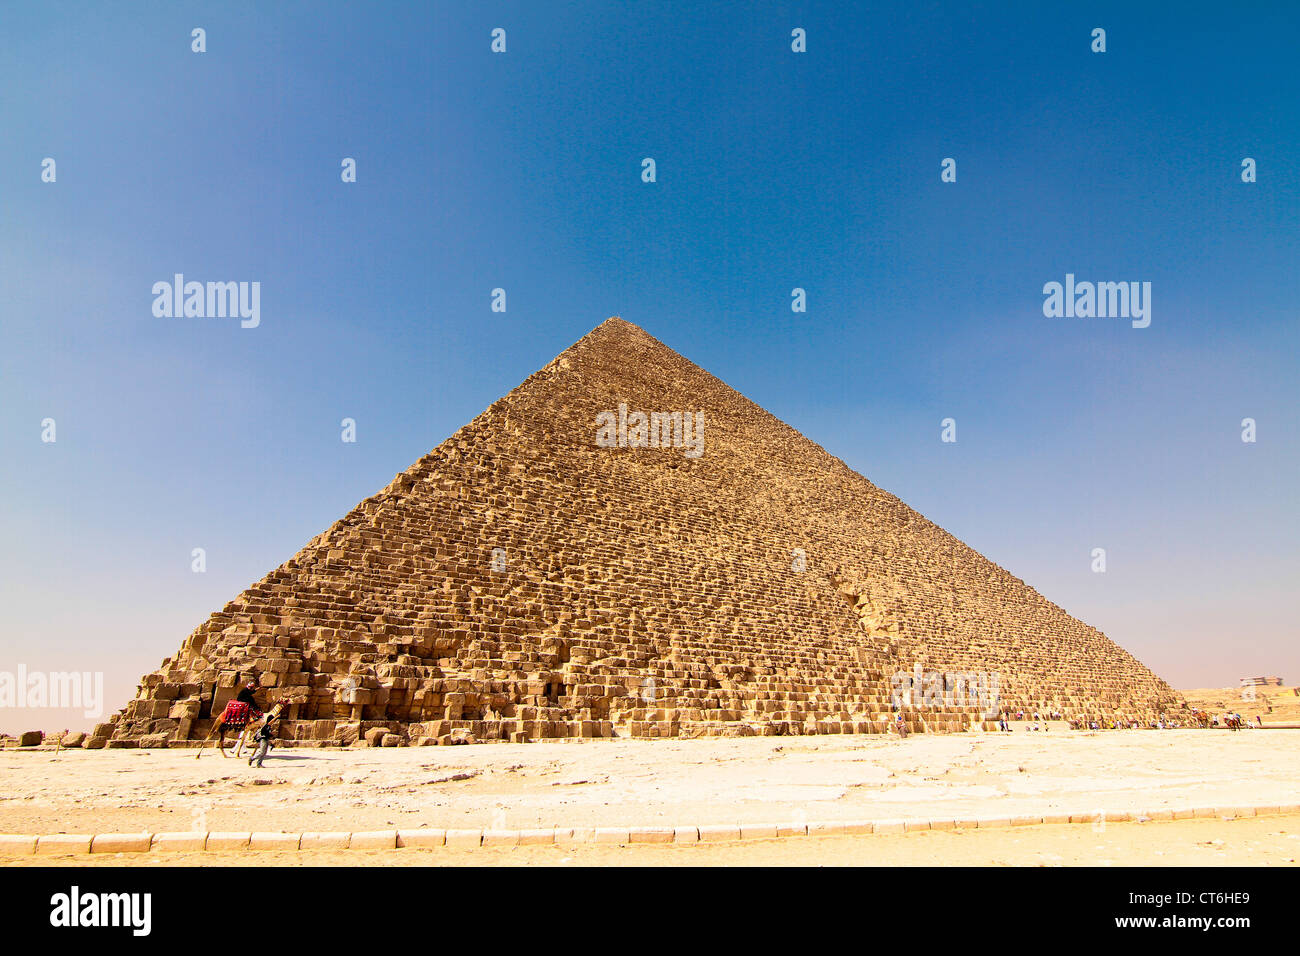 Pyramids of Giza Egypt Stock Photo